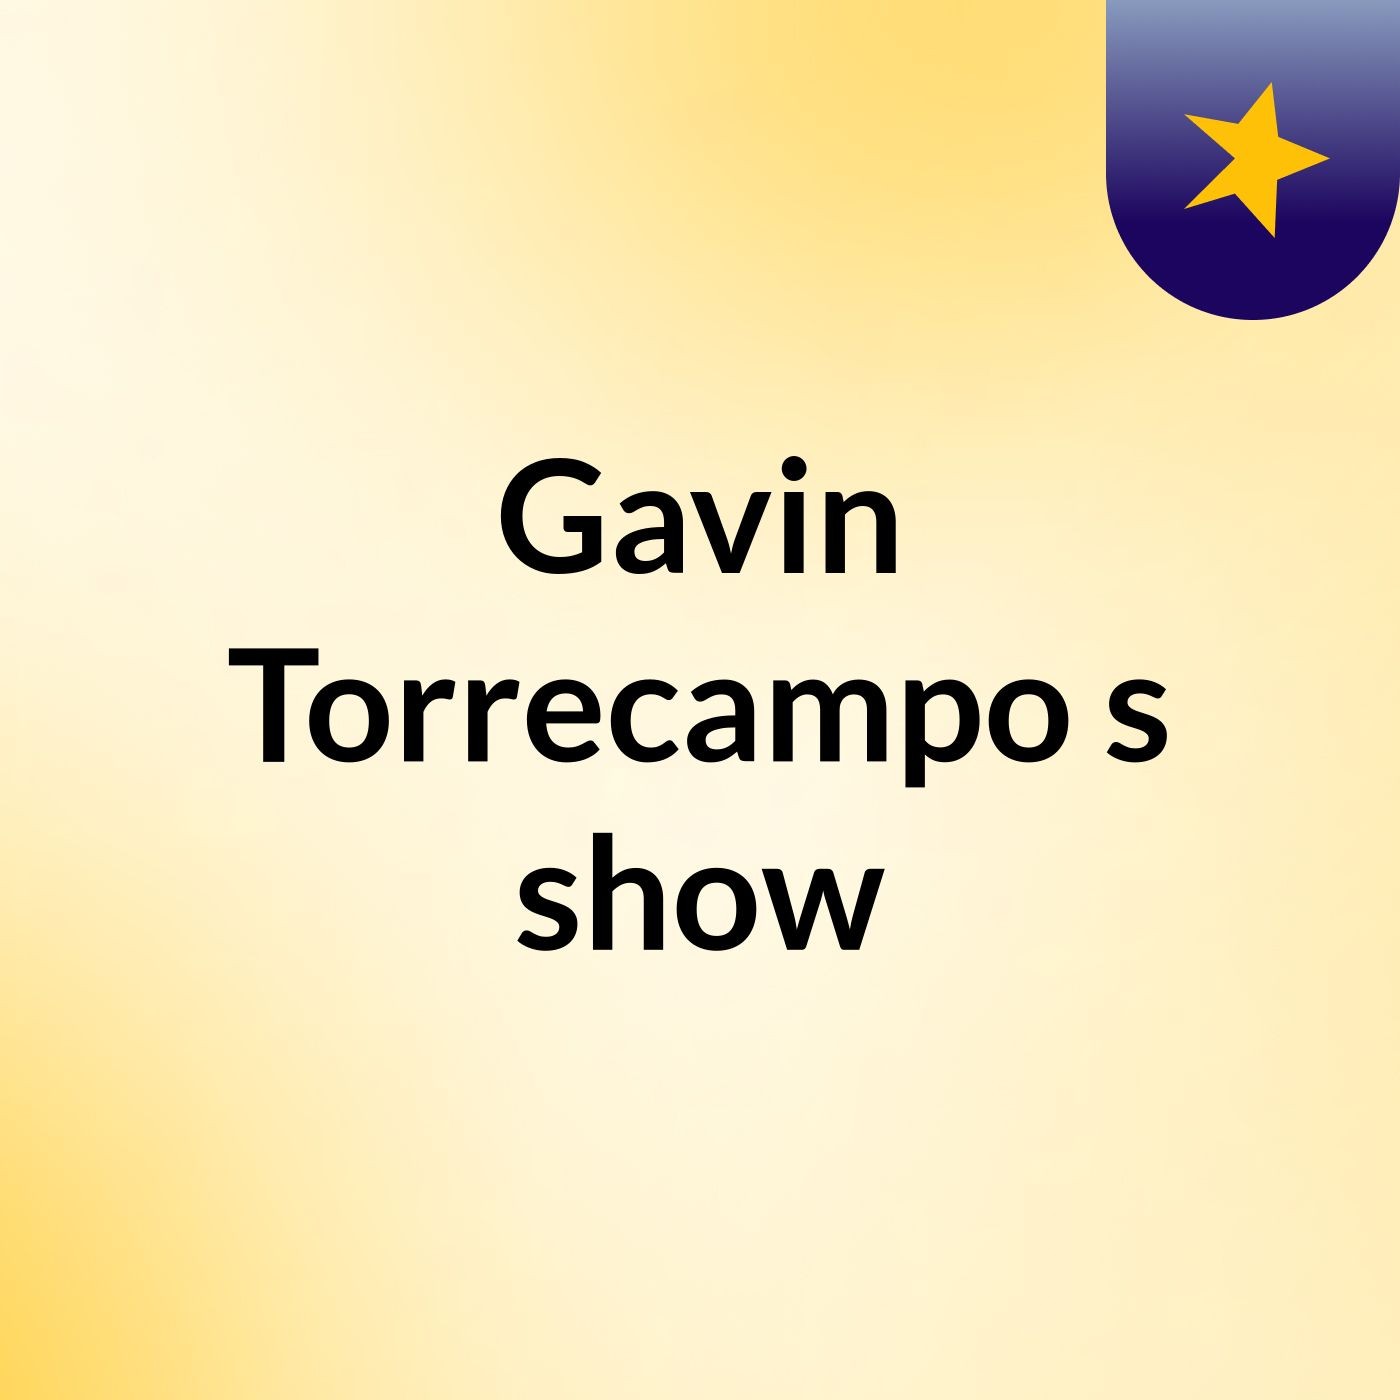 Gavin Torrecampo's show